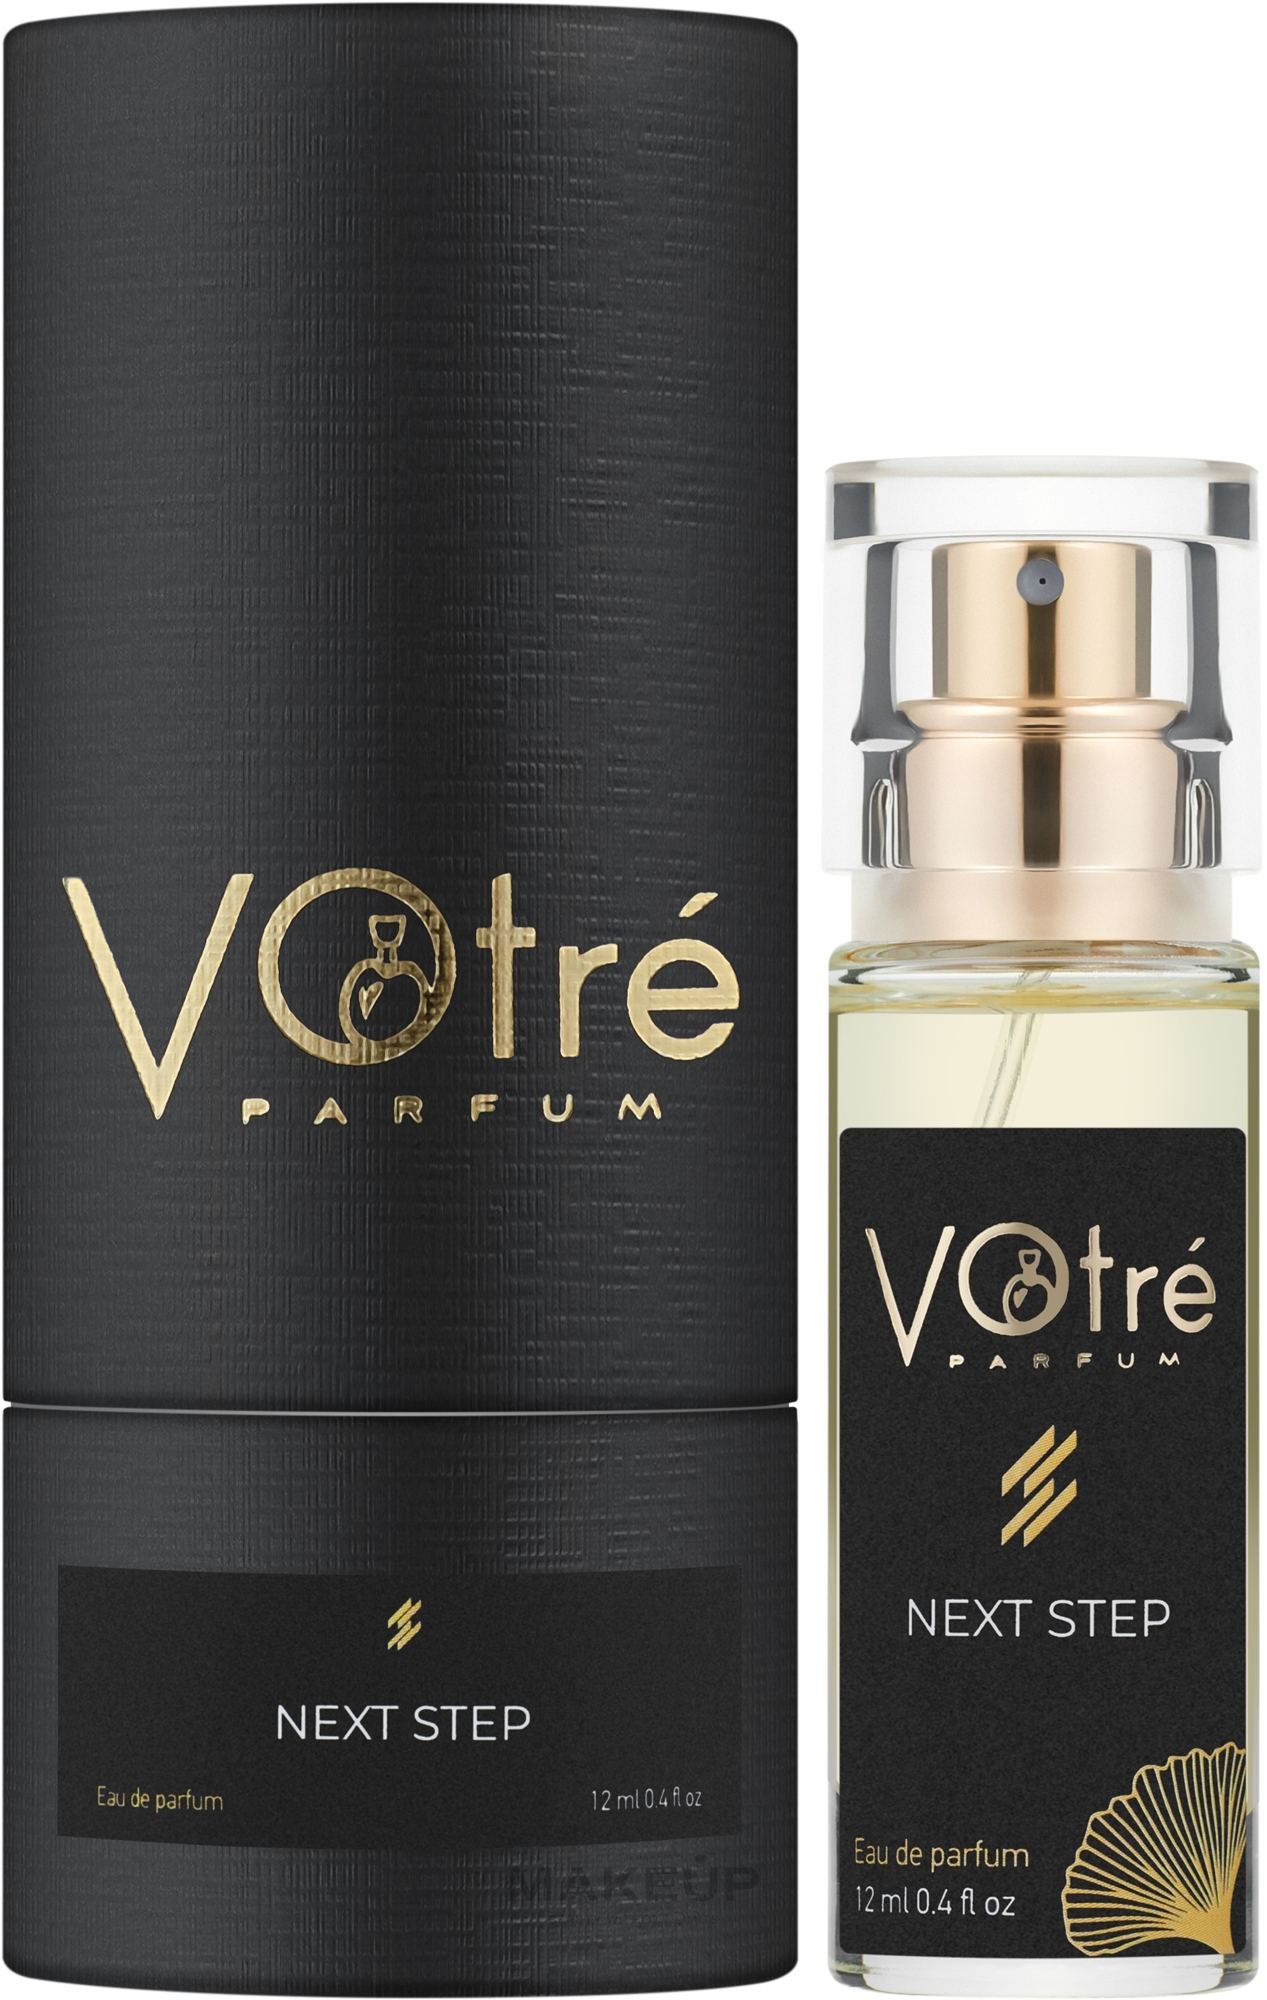 Votre Parfum Next Step - Парфюмированная вода (мини) — фото 12ml